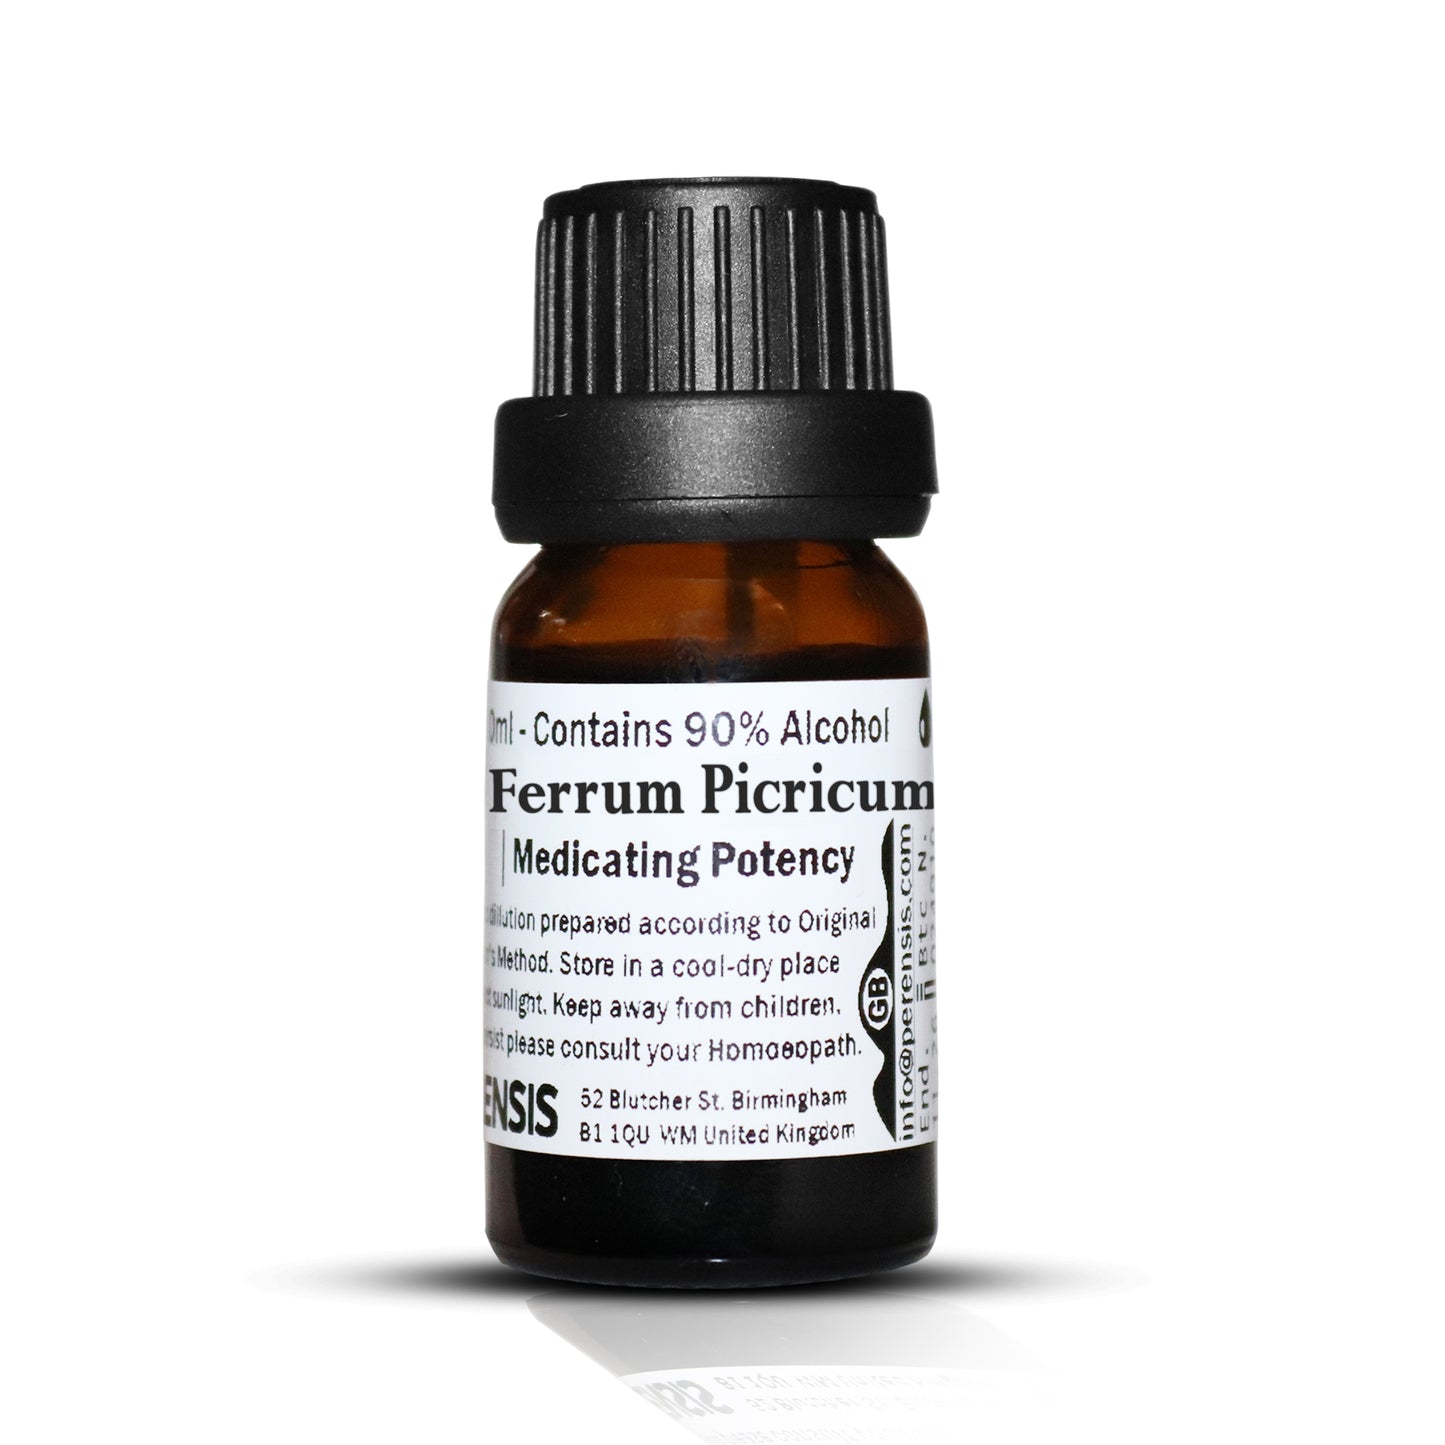 Ferrum Picricum